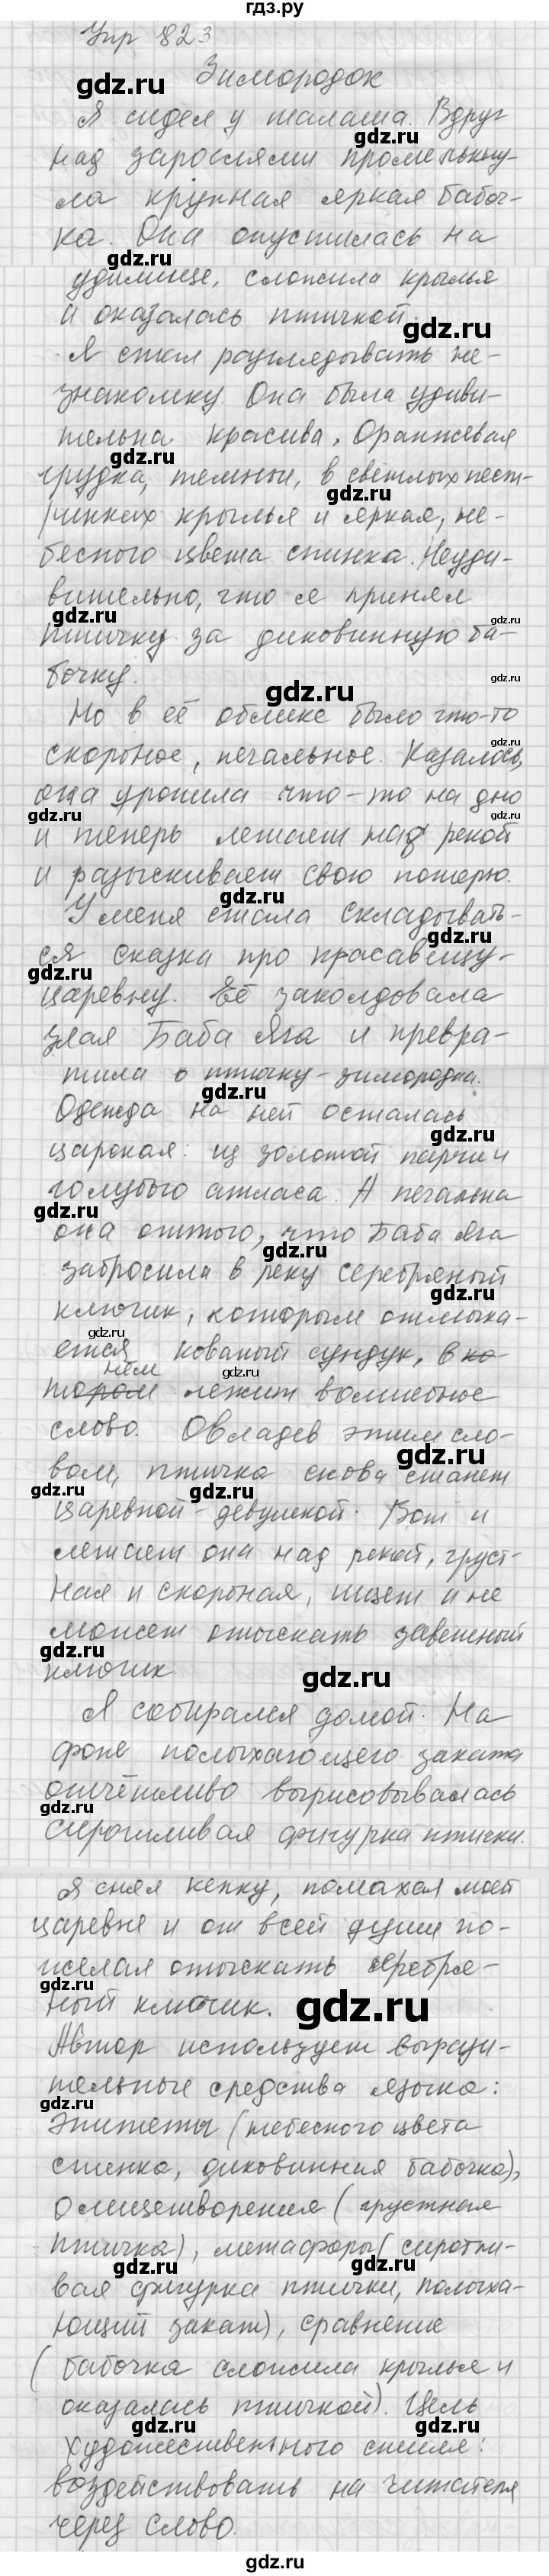 ГДЗ Упражнение 823 Русский Язык 5 Класс Учебник, Практика Купалова.